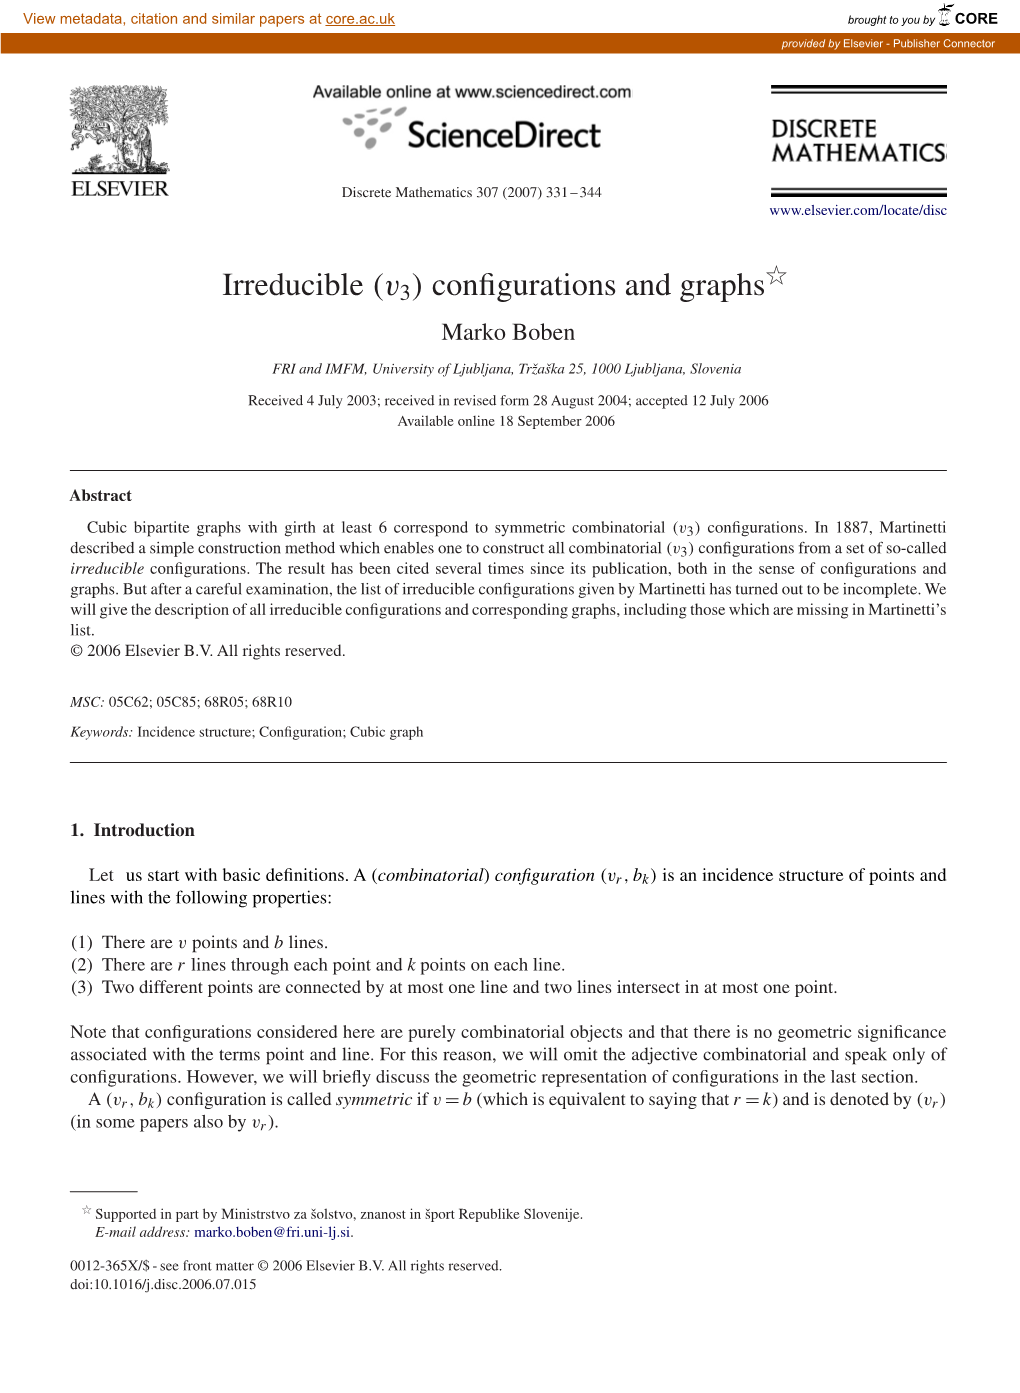 Irreducible (V3) Conﬁgurations and Graphs Marko Boben